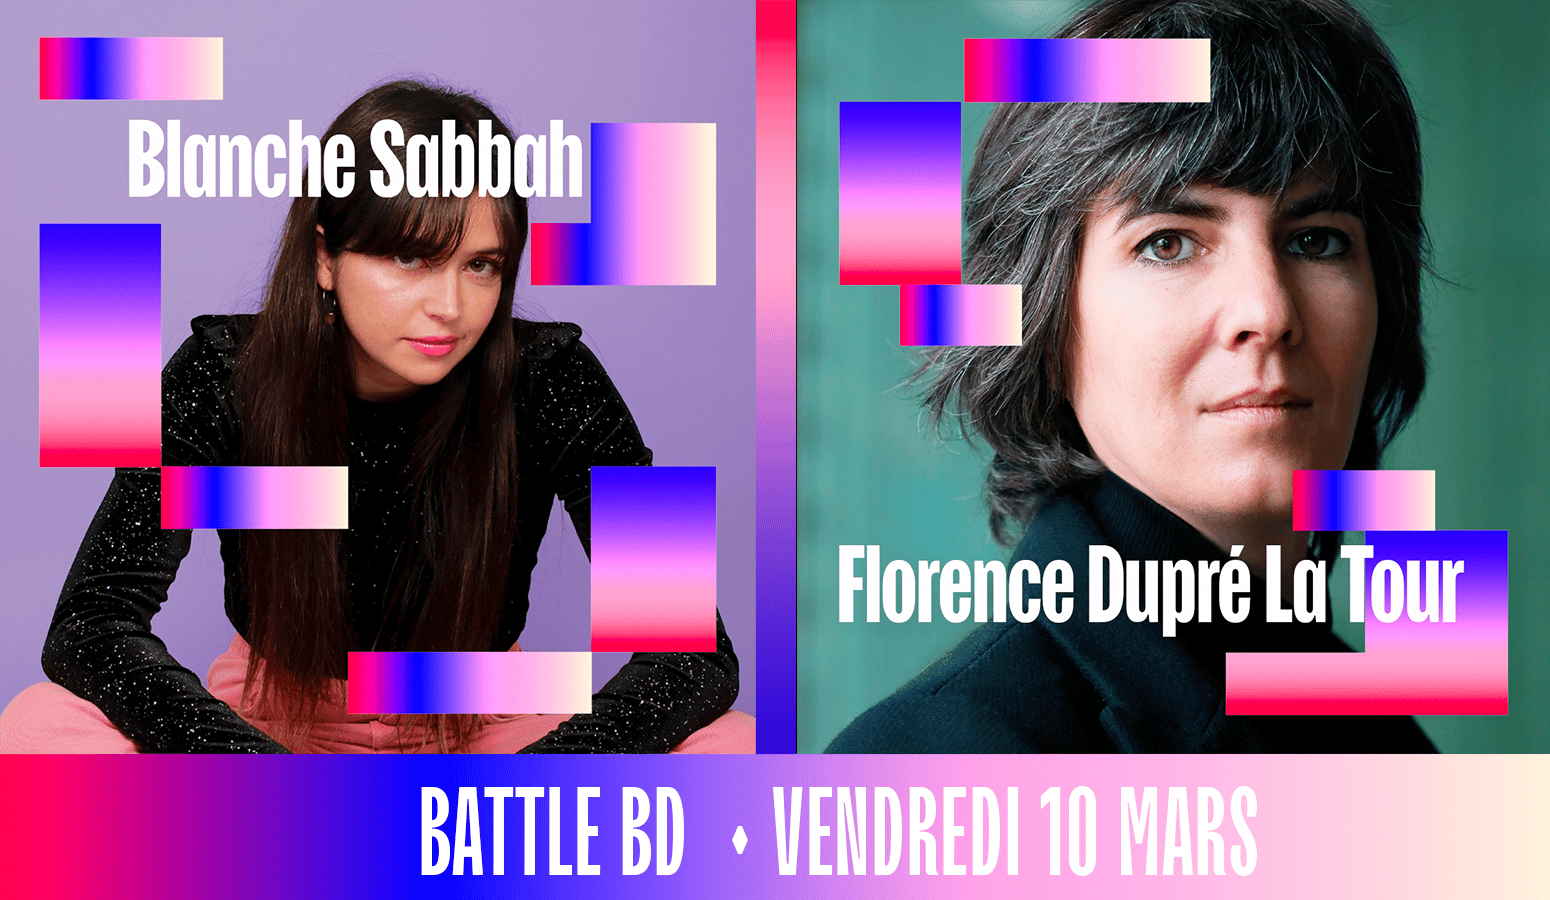 Template de la battle bd du vendredi 10 mars au Pop Women Festival de Blanche Sabbah et Florence Dupré La Tour